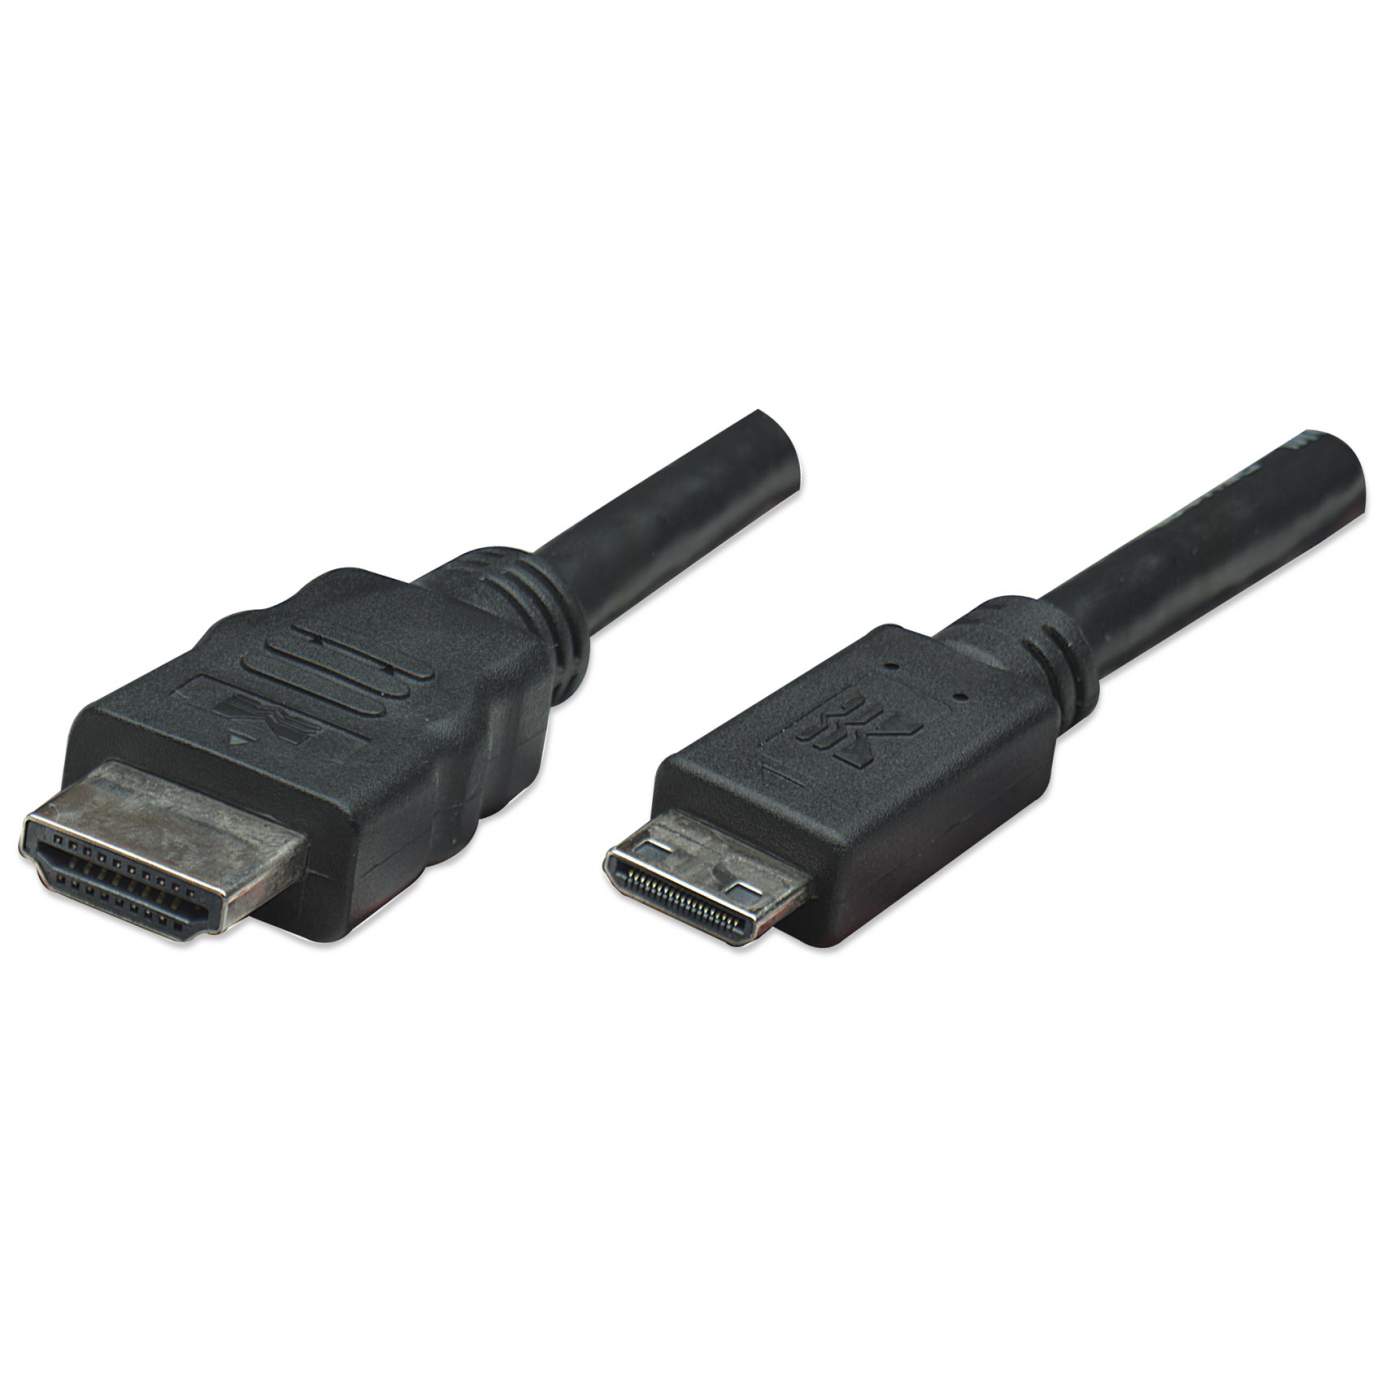 CABLE HDMI - HDMI 5METROS - Comprar en JS SOLUCIONES